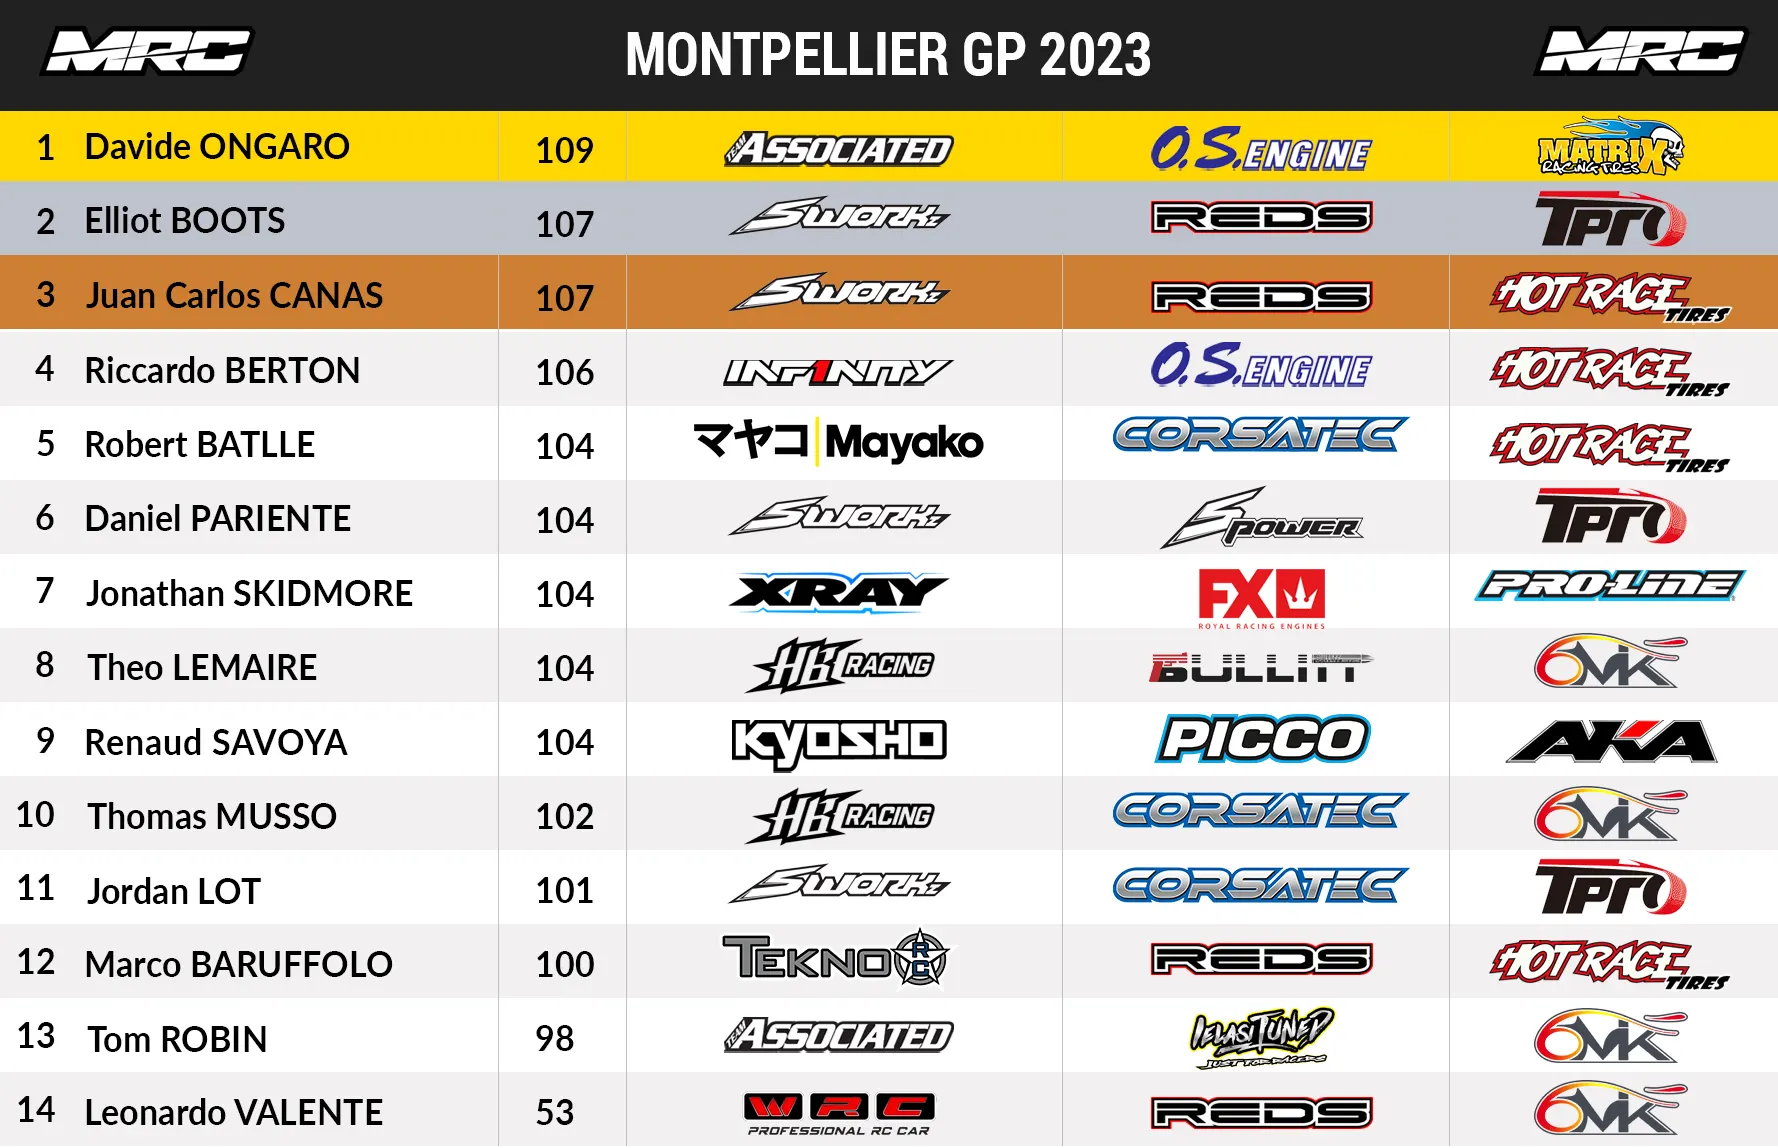 Finale HD du Grand Prix de Montpellier 2020 - Modélisme RC Buggy 1